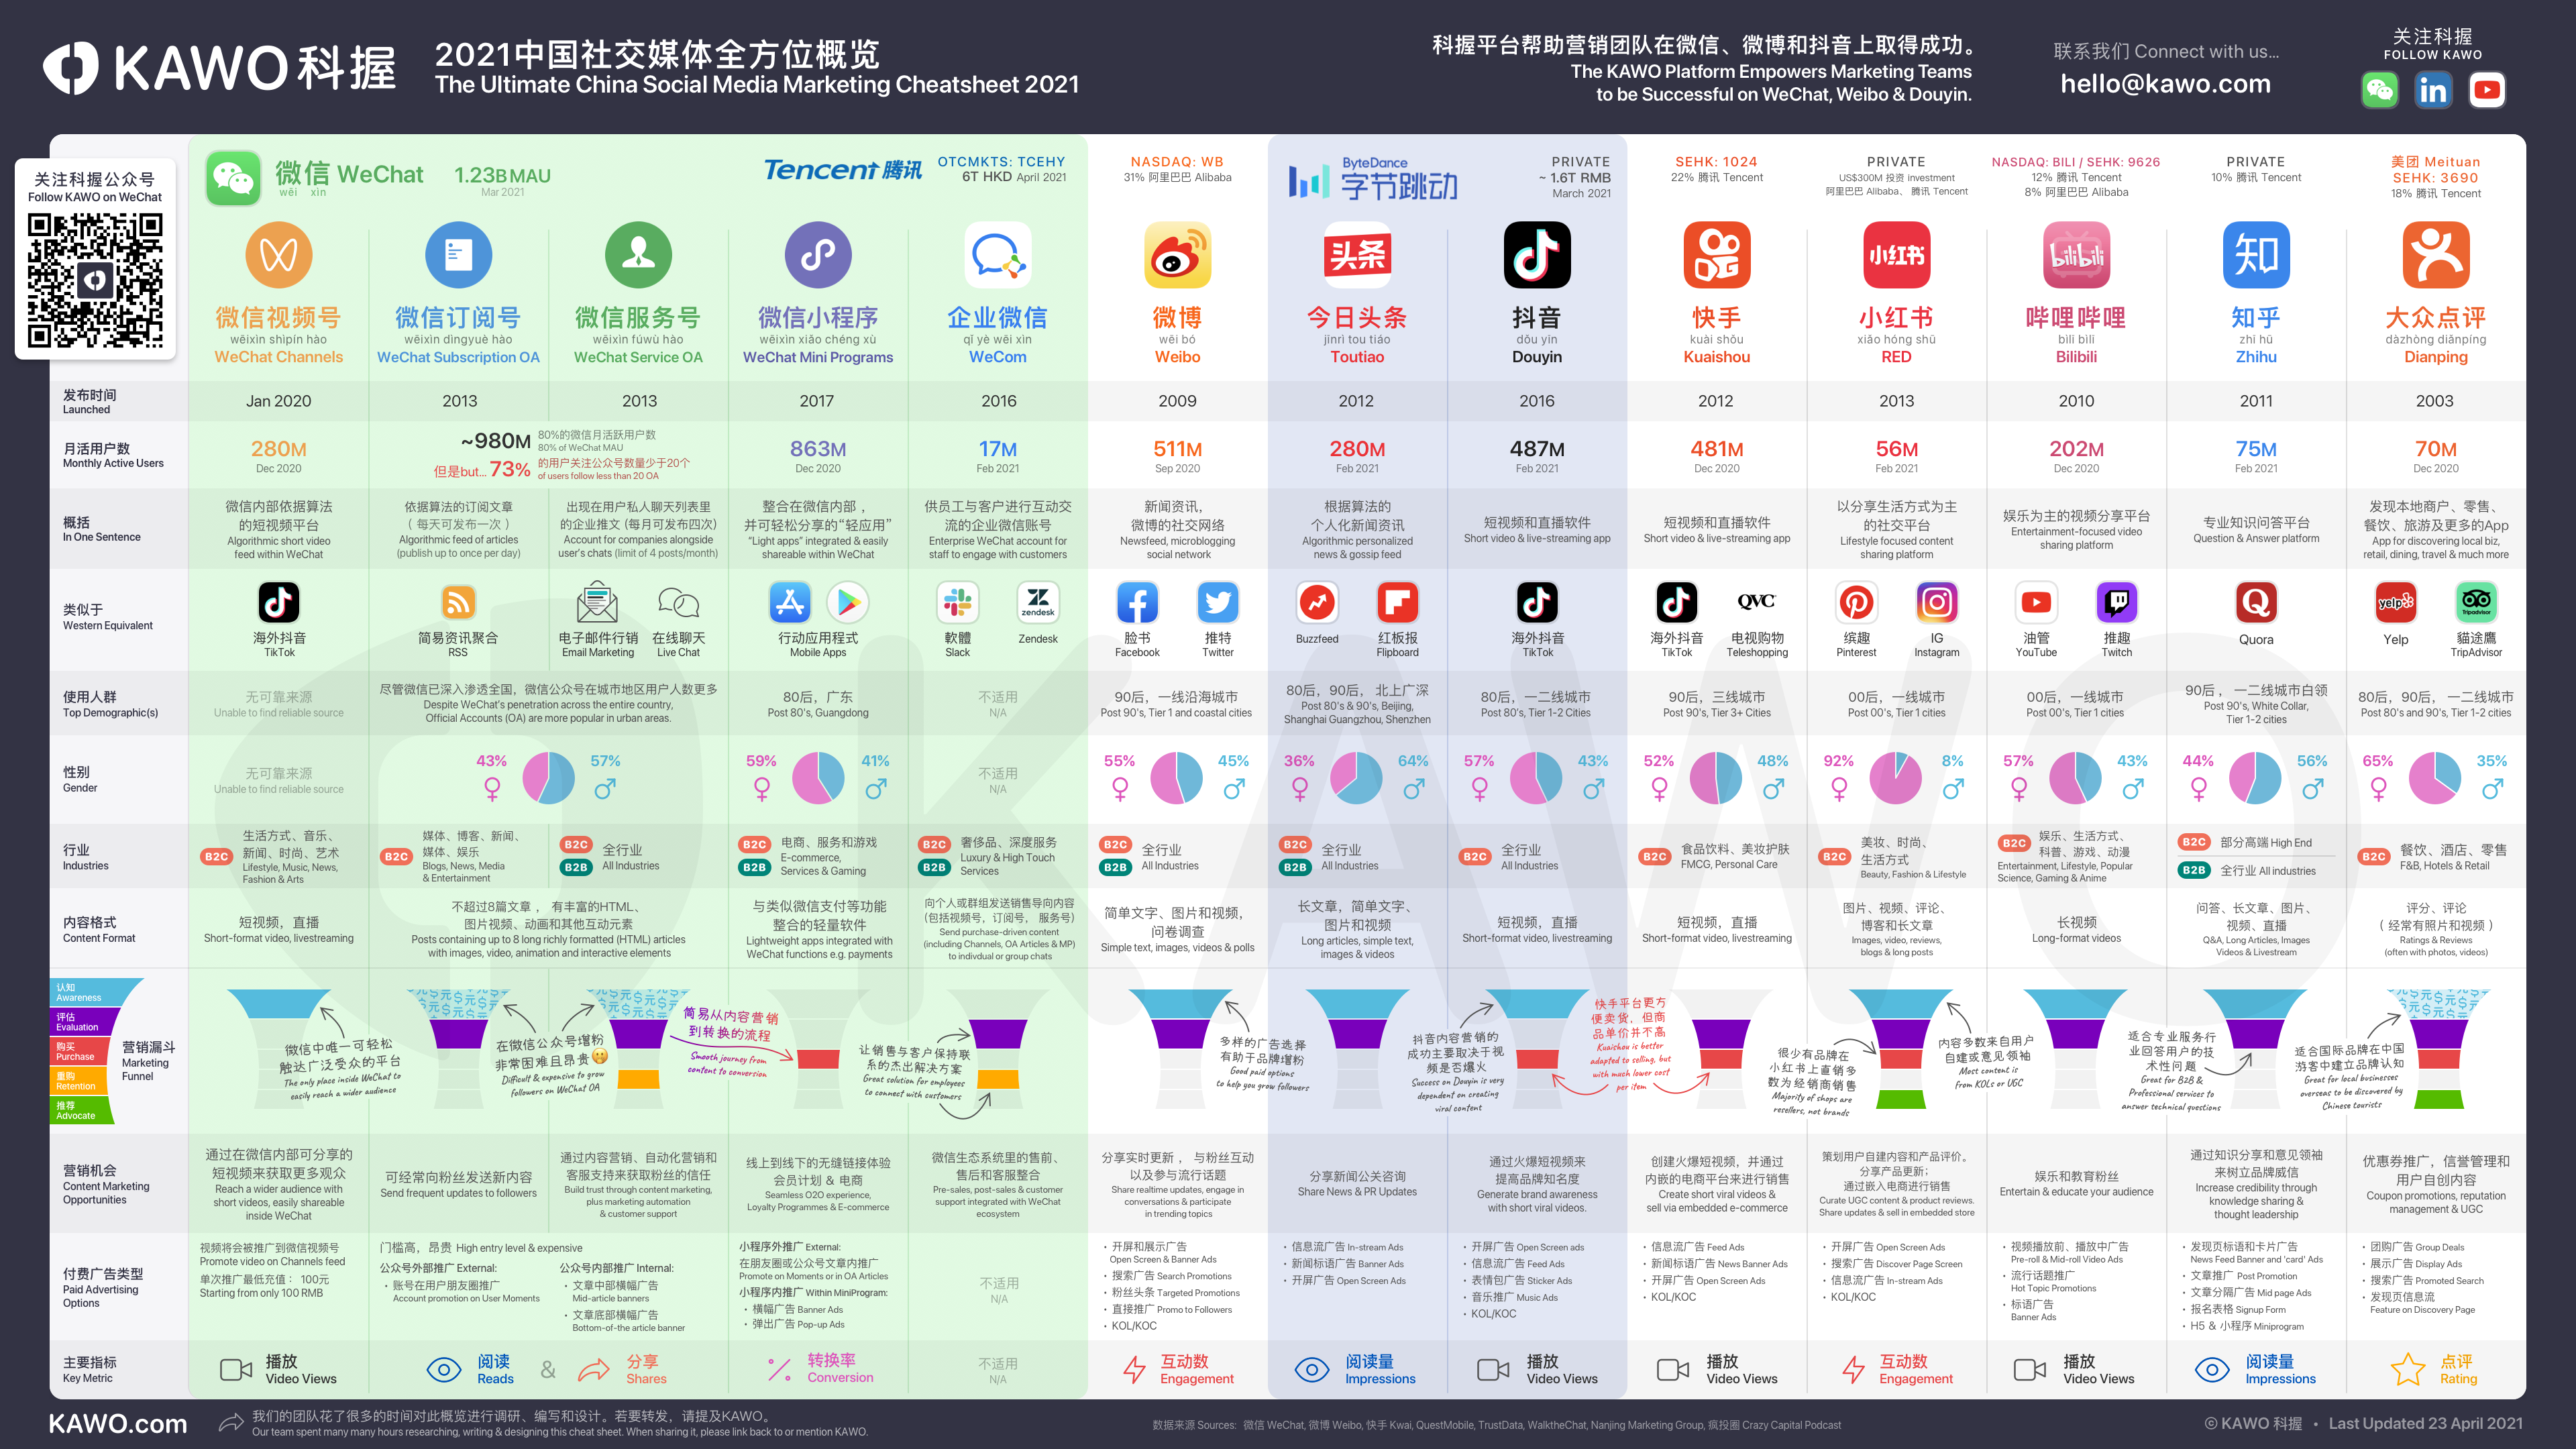 2021中国社交媒体全方位概览.png